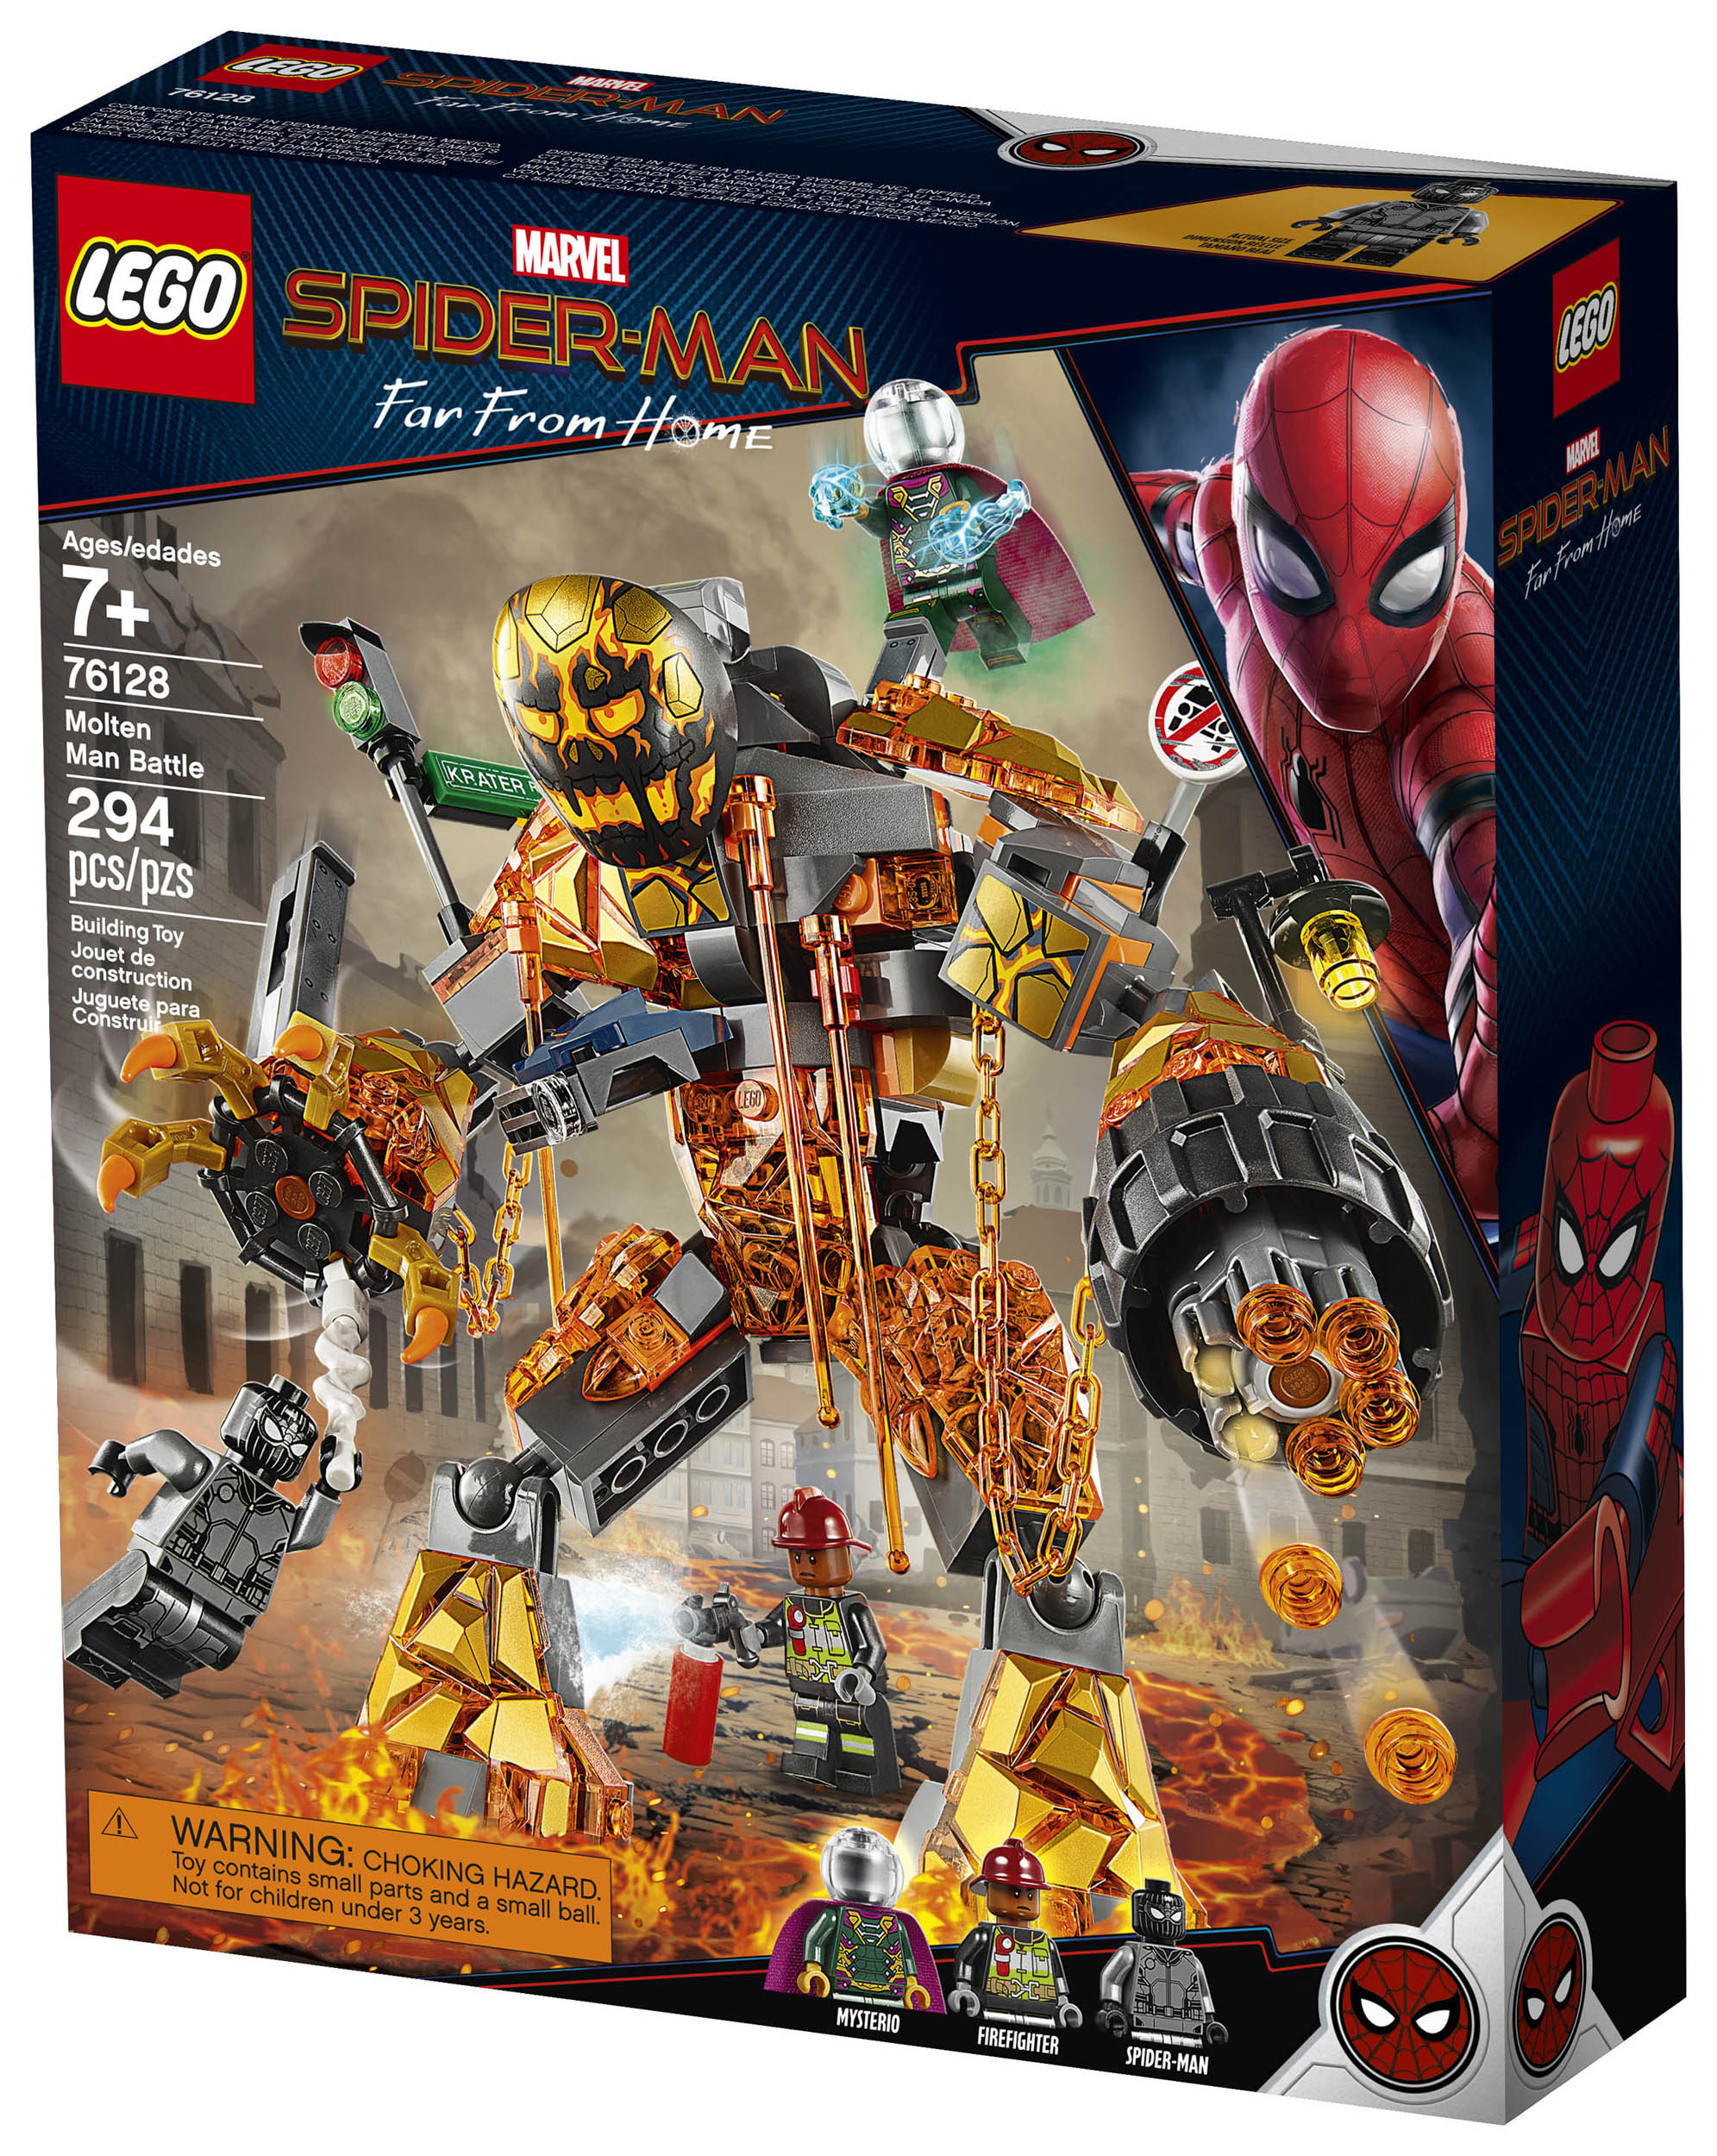 LEGO Spider-Man Far Home Sets Up Order! - Marvel Toy News